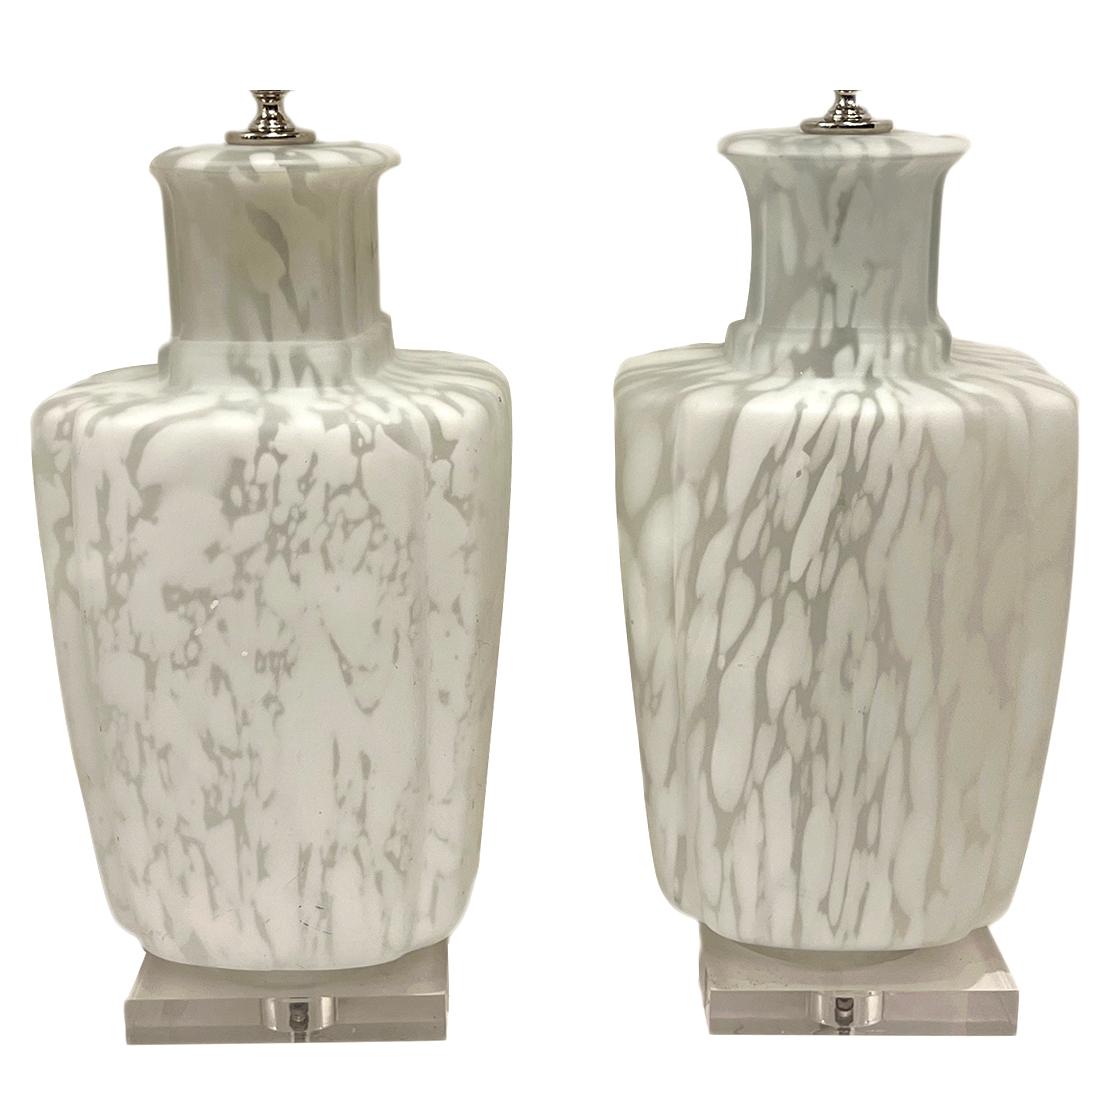 Paire de lampes de table italiennes des années 1960 en verre blanc moucheté avec bases en lucite.

Mesures :
Hauteur du corps : 18,5